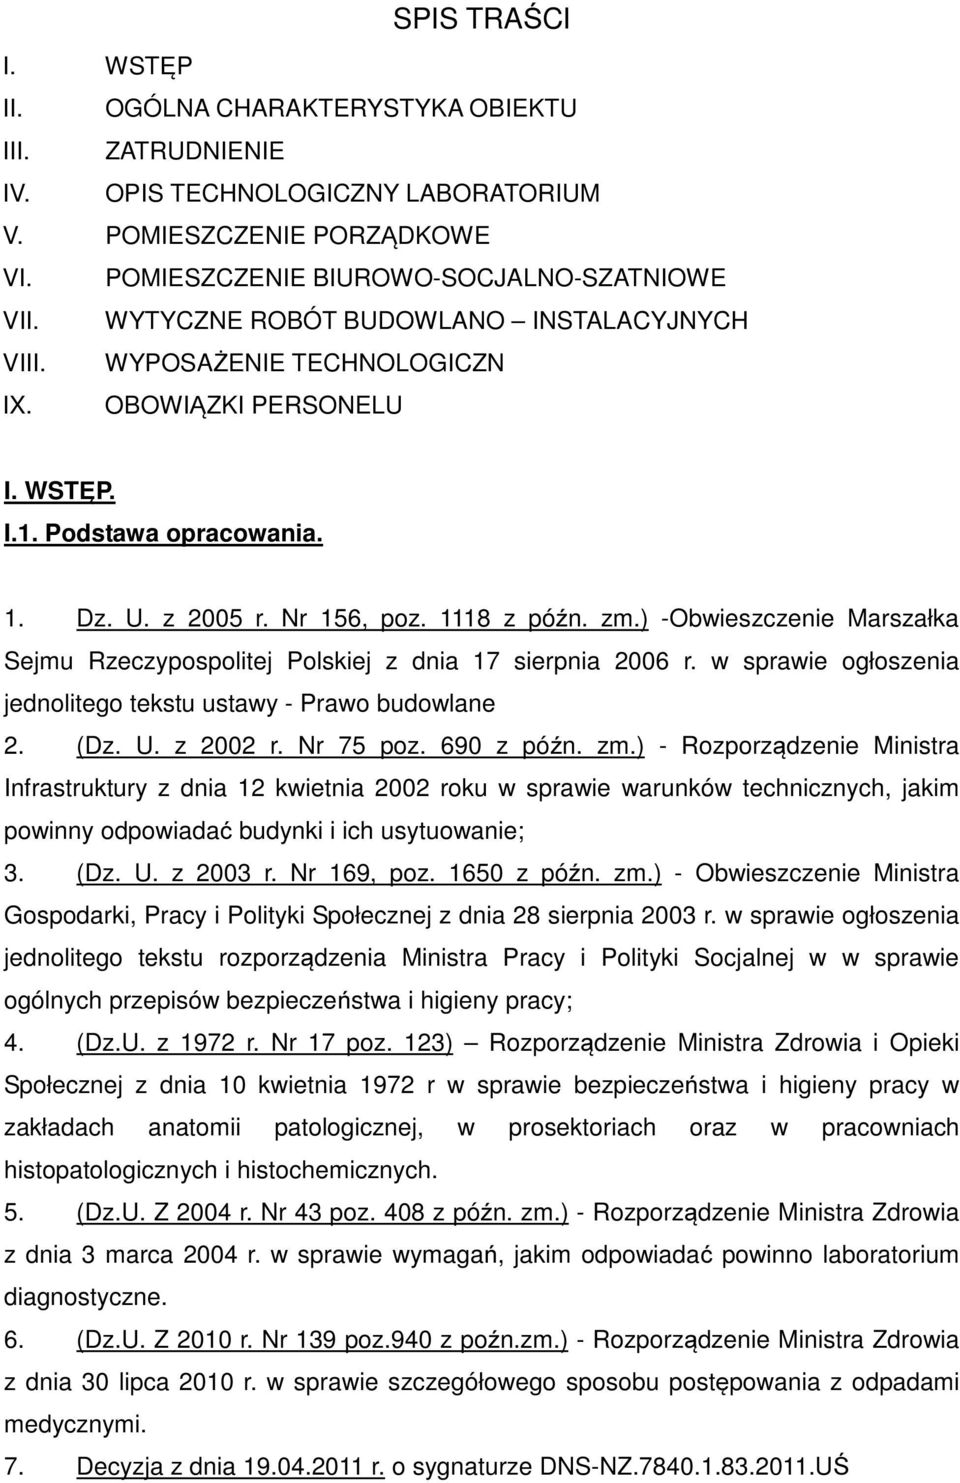 ) -Obwieszczenie Marszałka Sejmu Rzeczypsplitej Plskiej z dnia 17 sierpnia 2006 r. w sprawie głszenia jednliteg tekstu ustawy - Praw budwlane 2. (Dz. U. z 2002 r. Nr 75 pz. 690 z późn. zm.